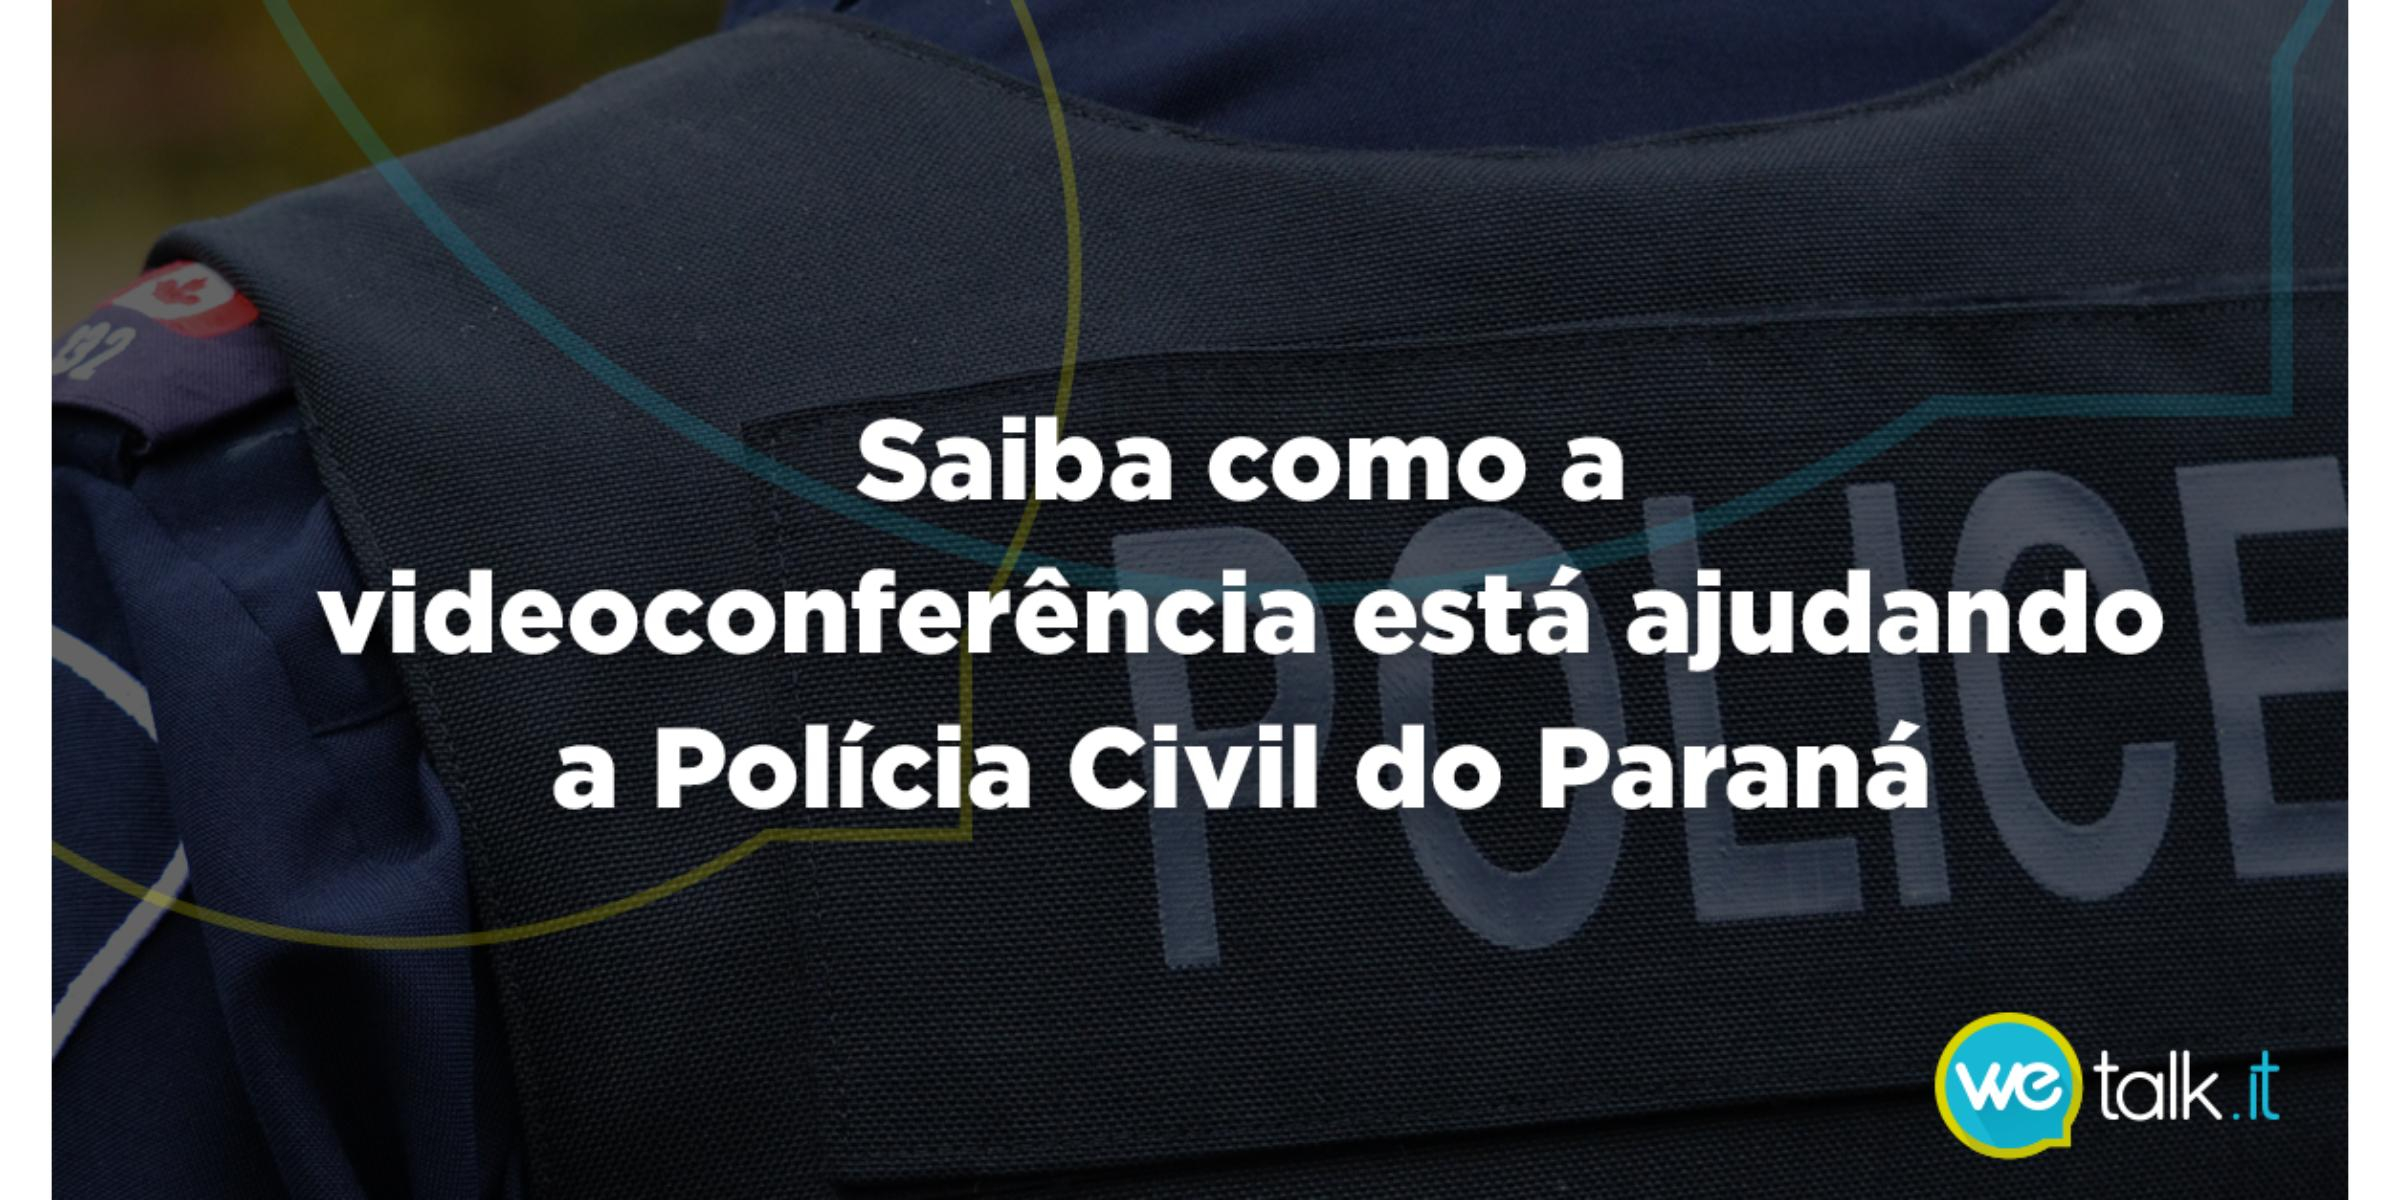 Como a videoconferência está ajudando a Policia Civil do Paraná